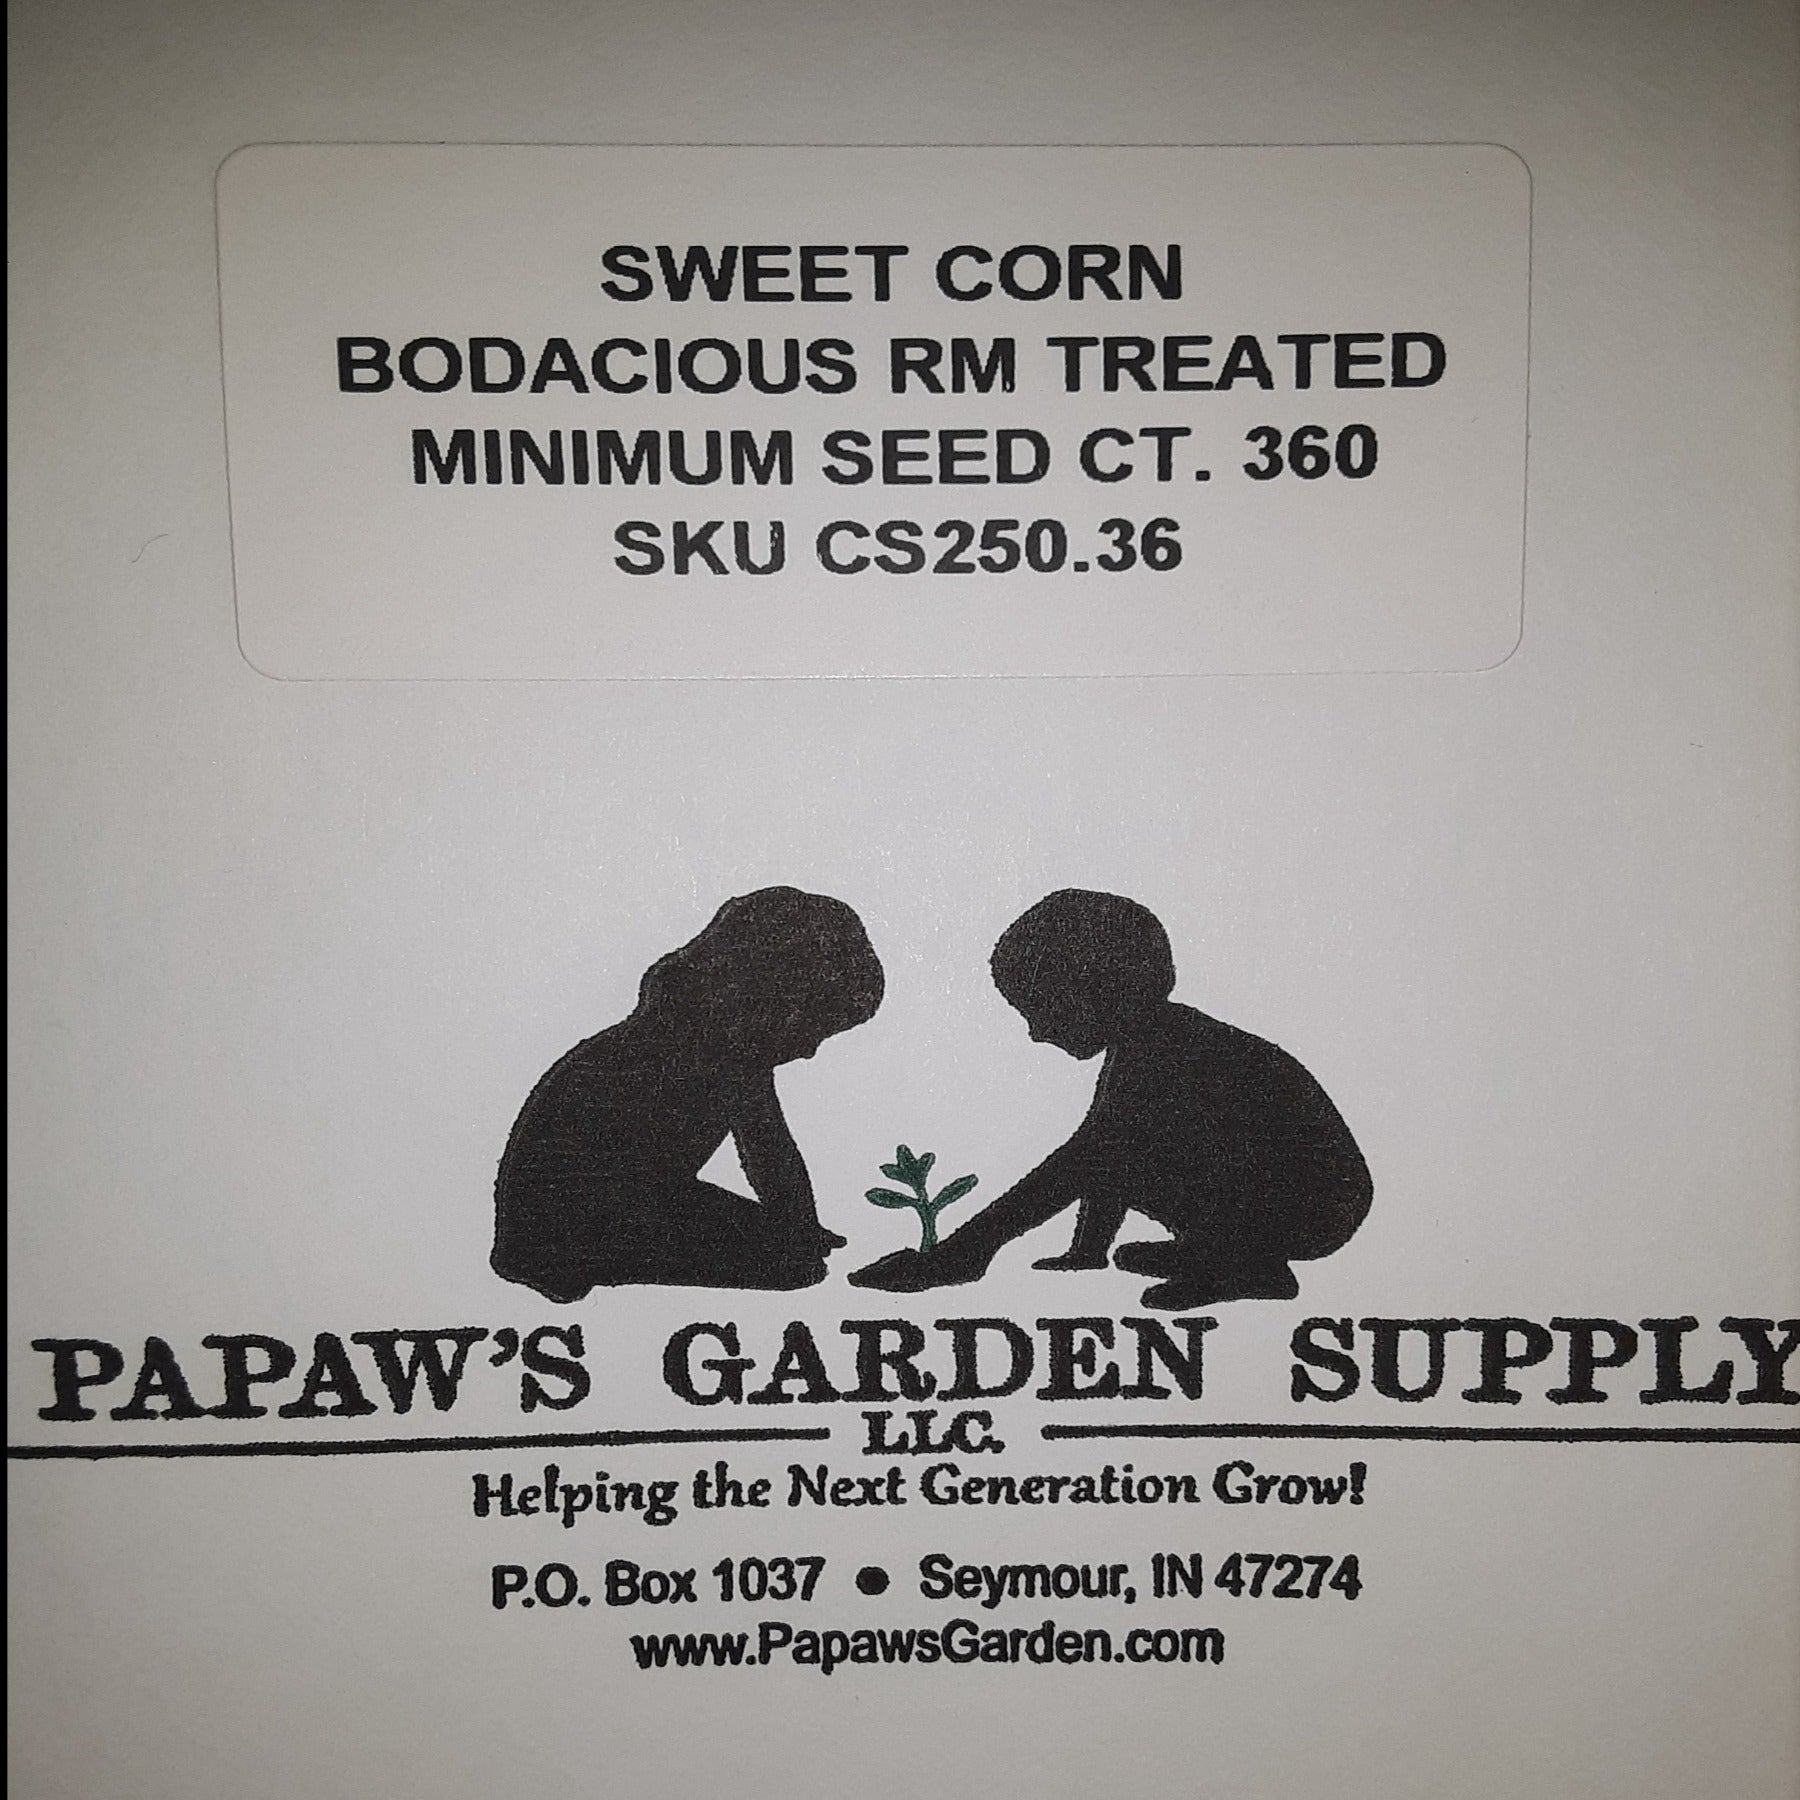 Bodacious RM Yellow Sweet Corn Treated Seeds